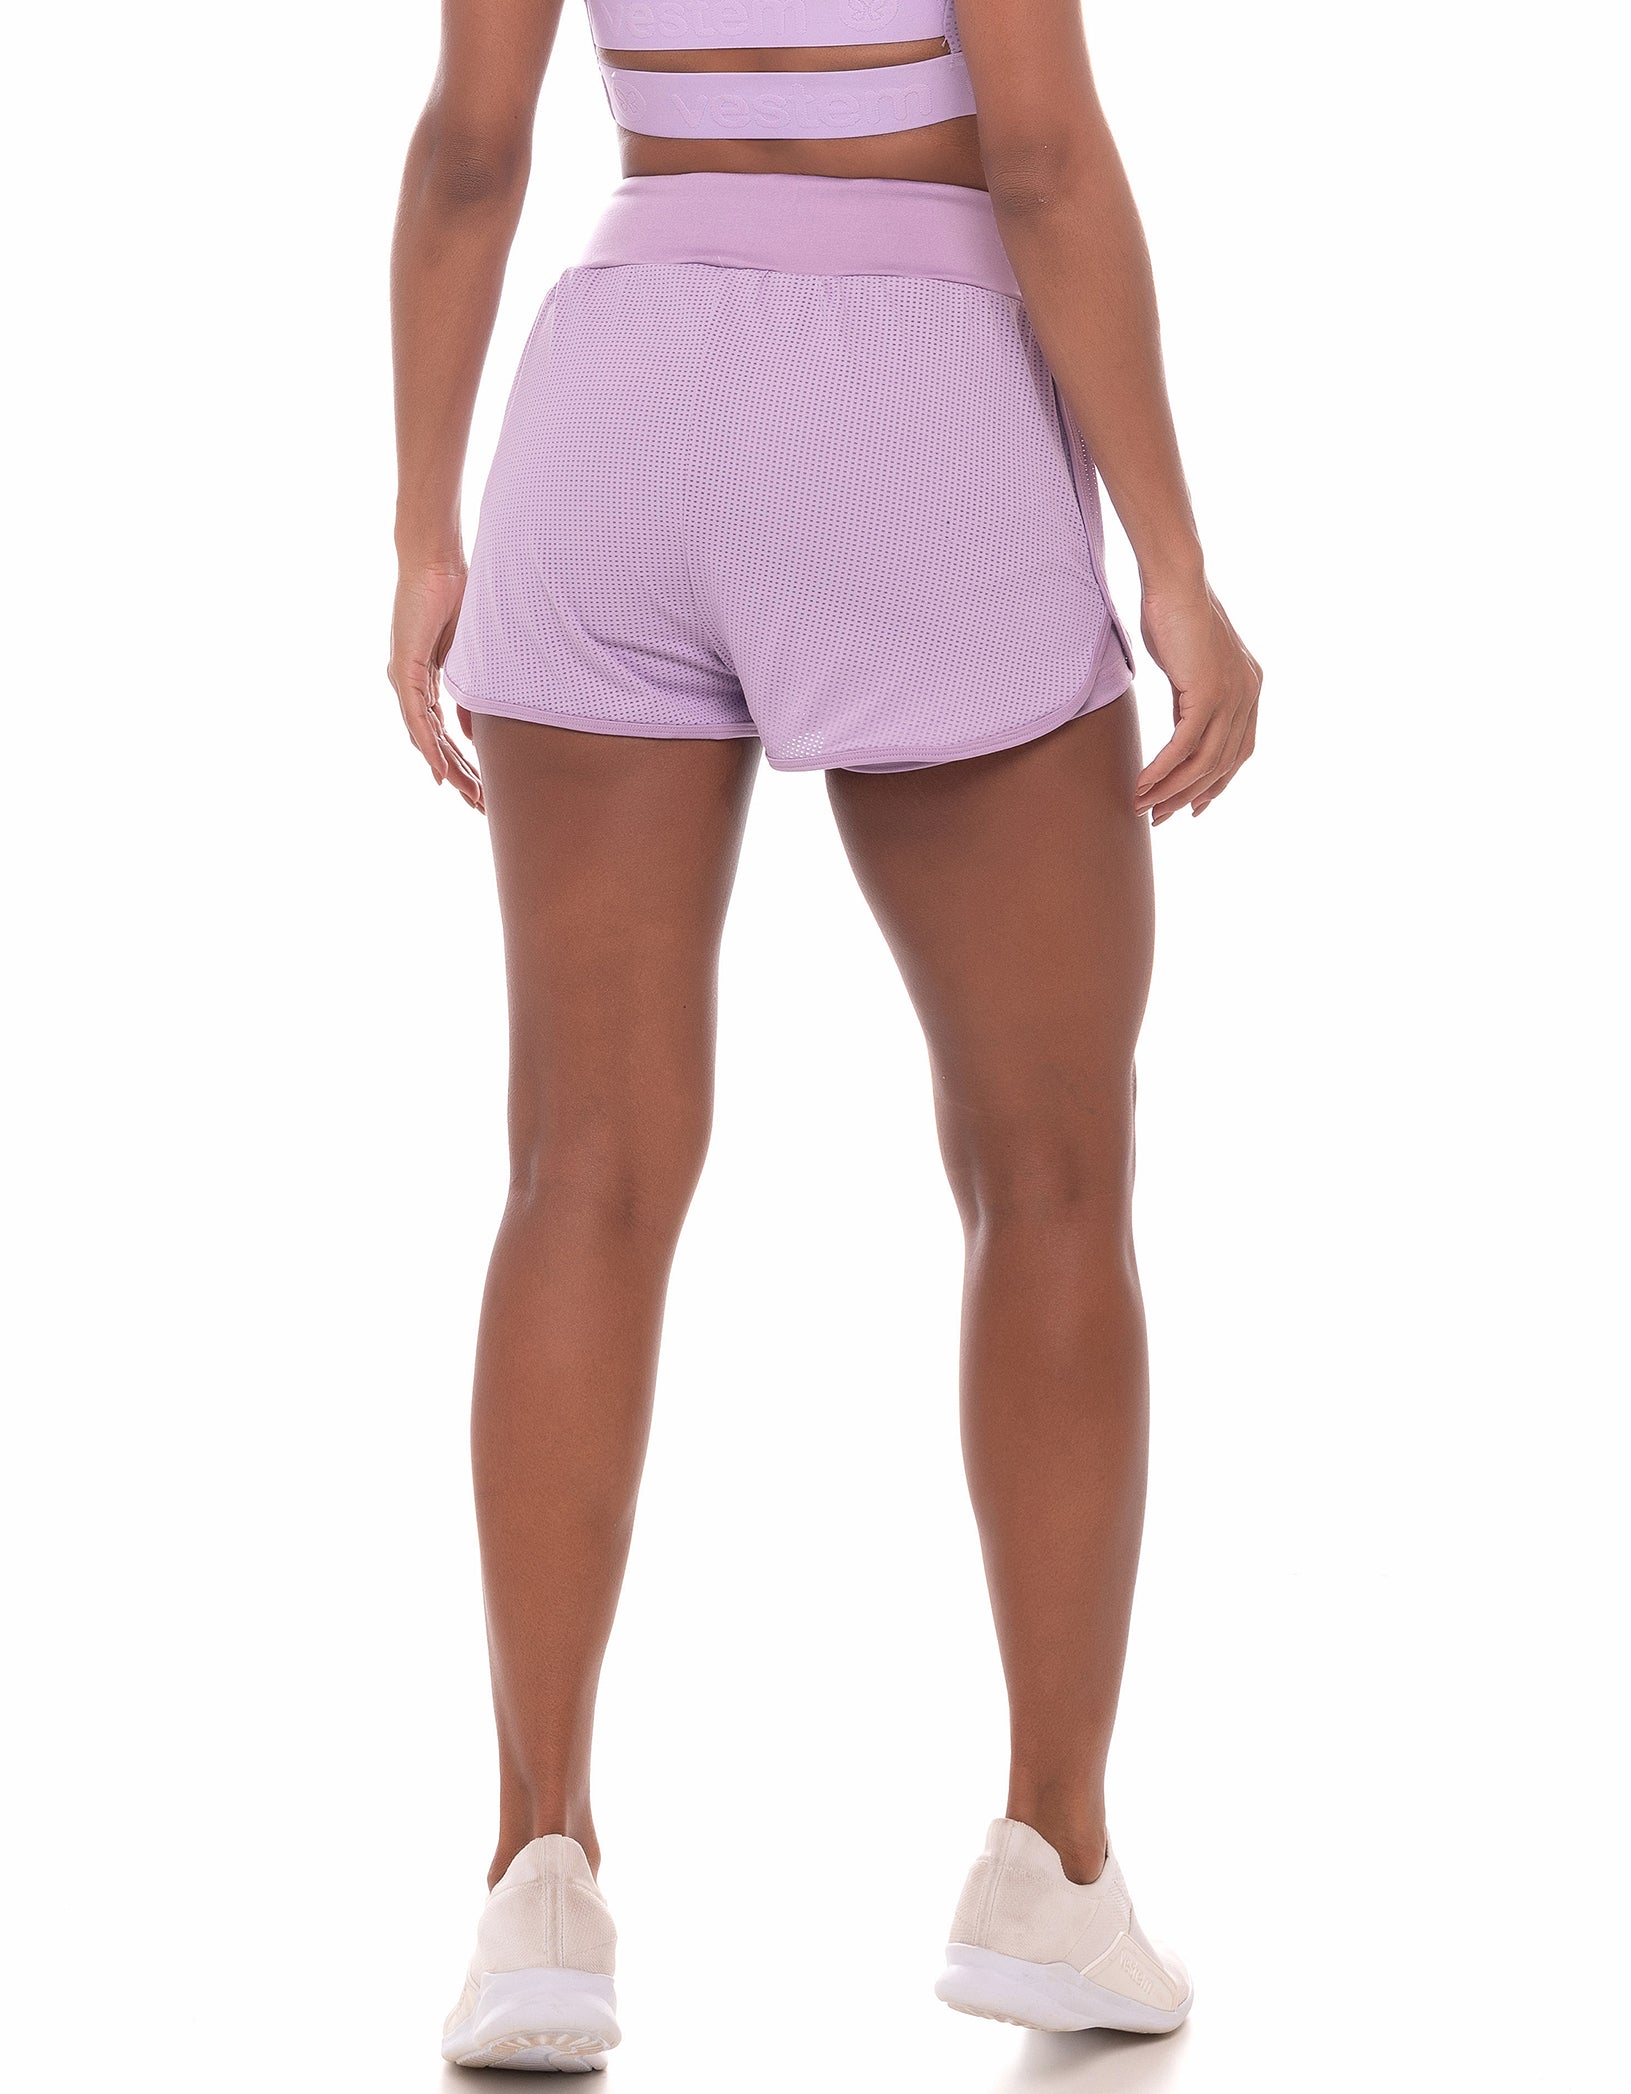 Vestem - Leblon Lilac Purple Shorts - SH452C0023